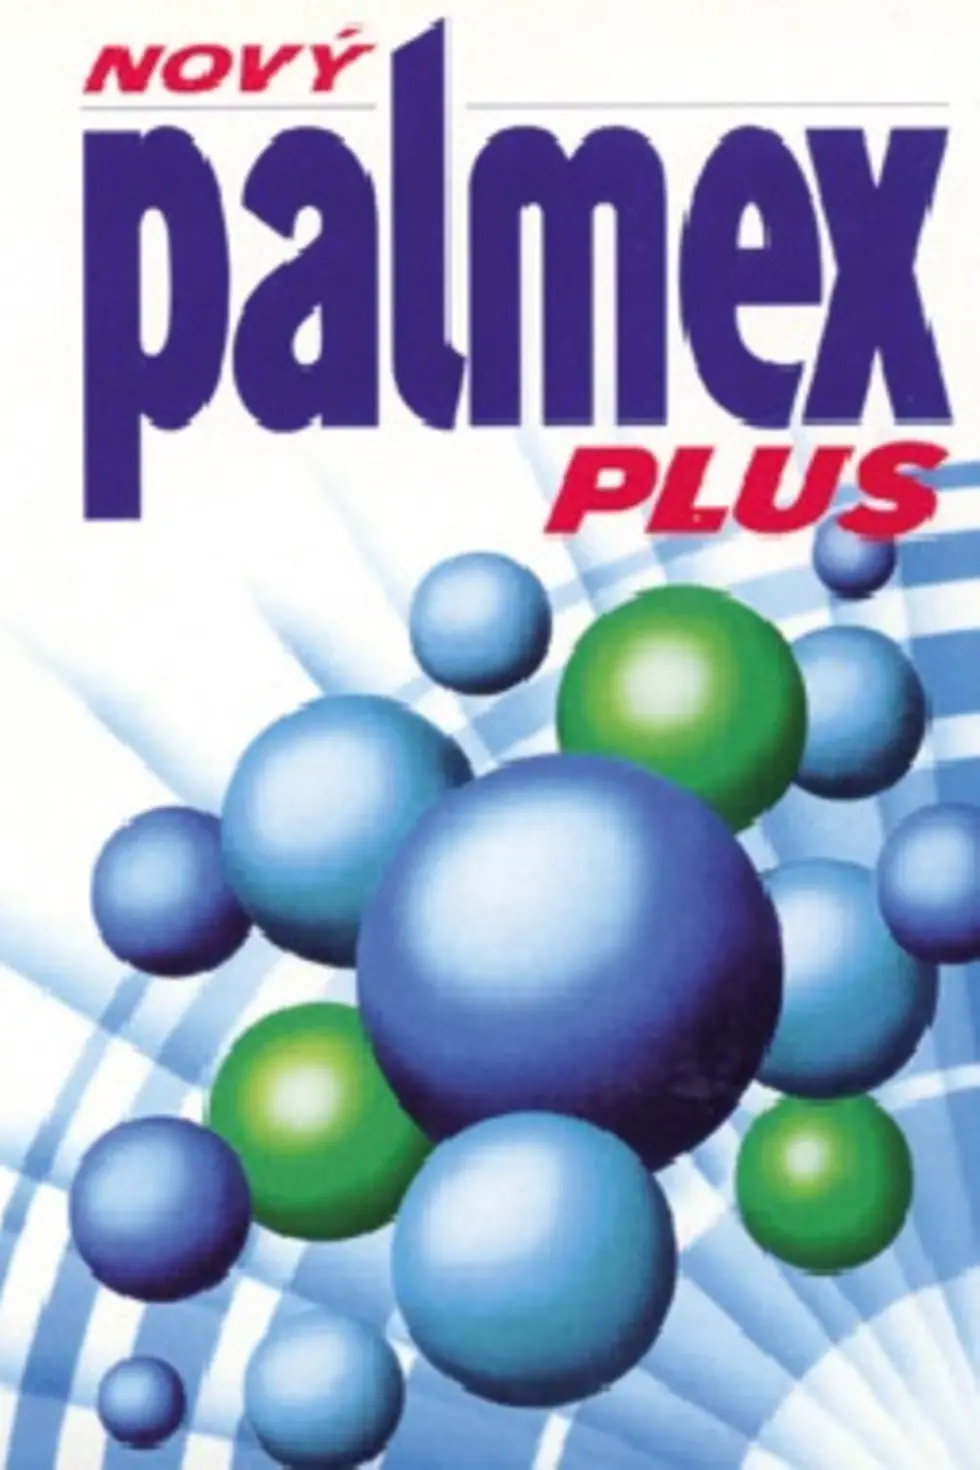 henkel-palmex-sk-SK